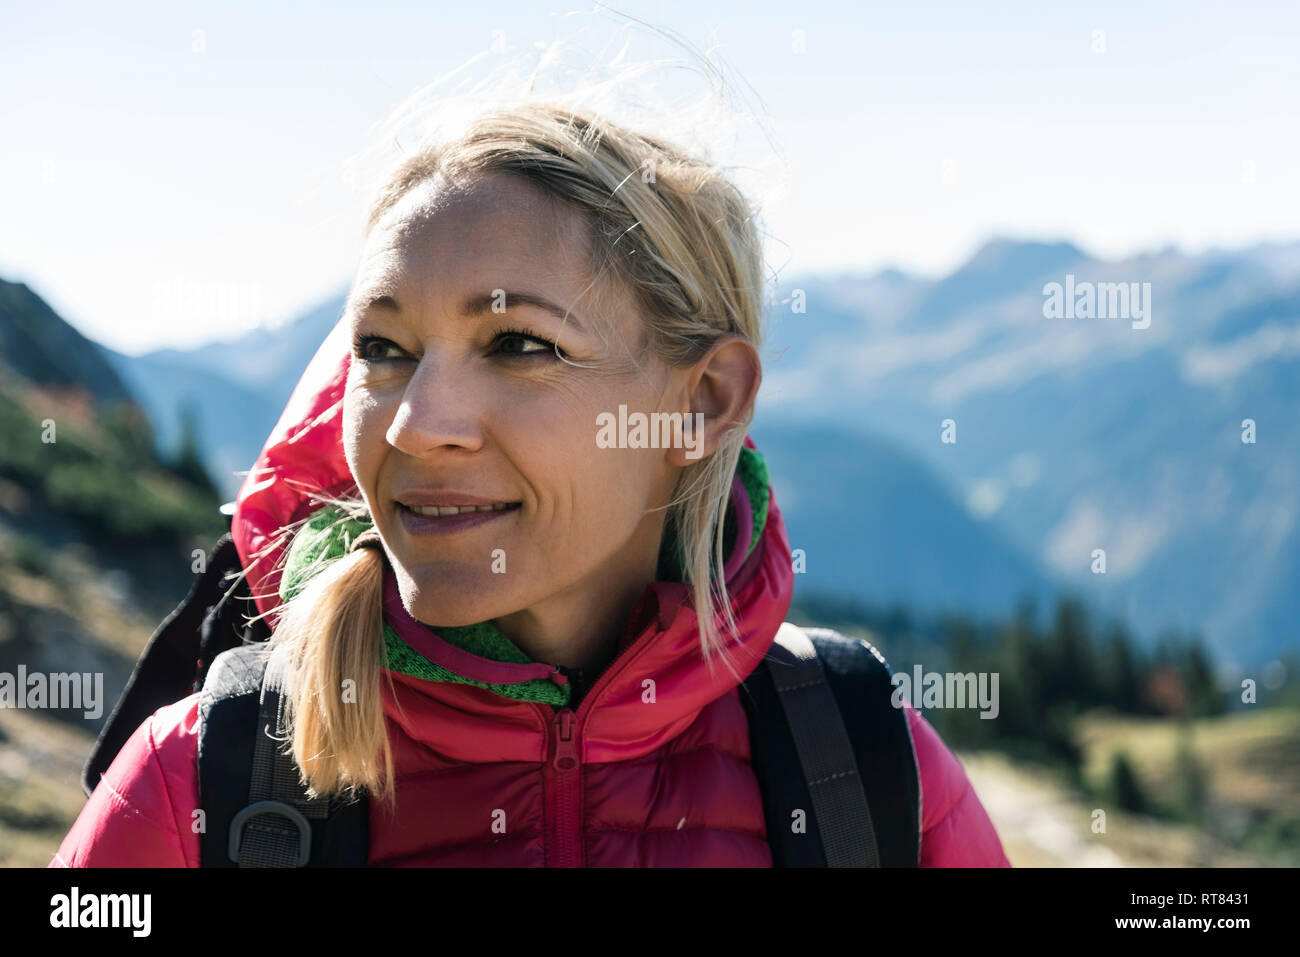 Austria, Tirolo, ritratto di donna sorridente su una escursione in montagna Foto Stock